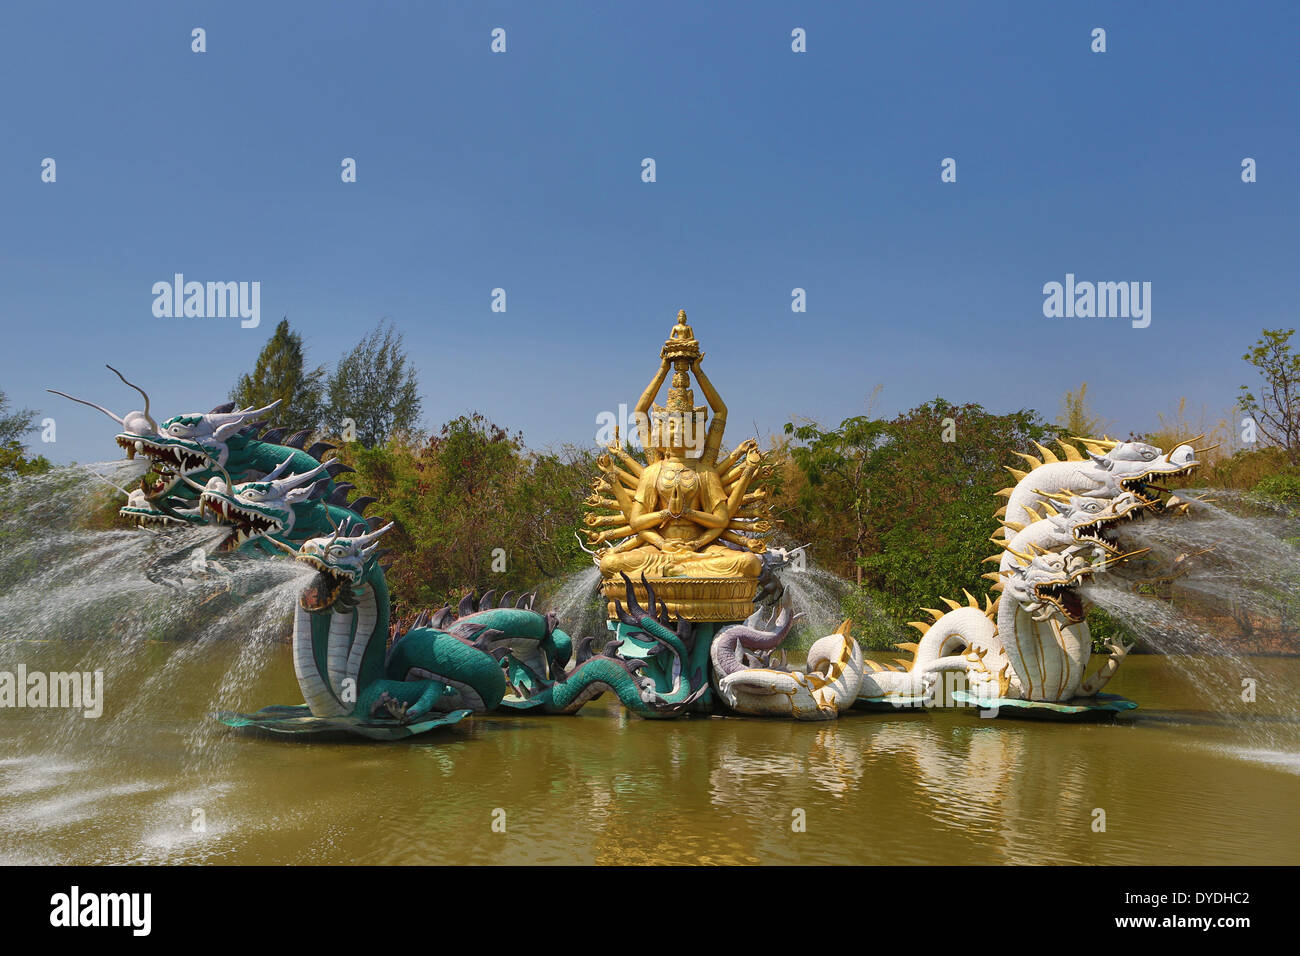 Alte Avalokitesavara Bangkok Bodhisattva Siam Thailand Asien bunte Kultur Drachen Brunnen Park Teich touristische Reisen Stockfoto